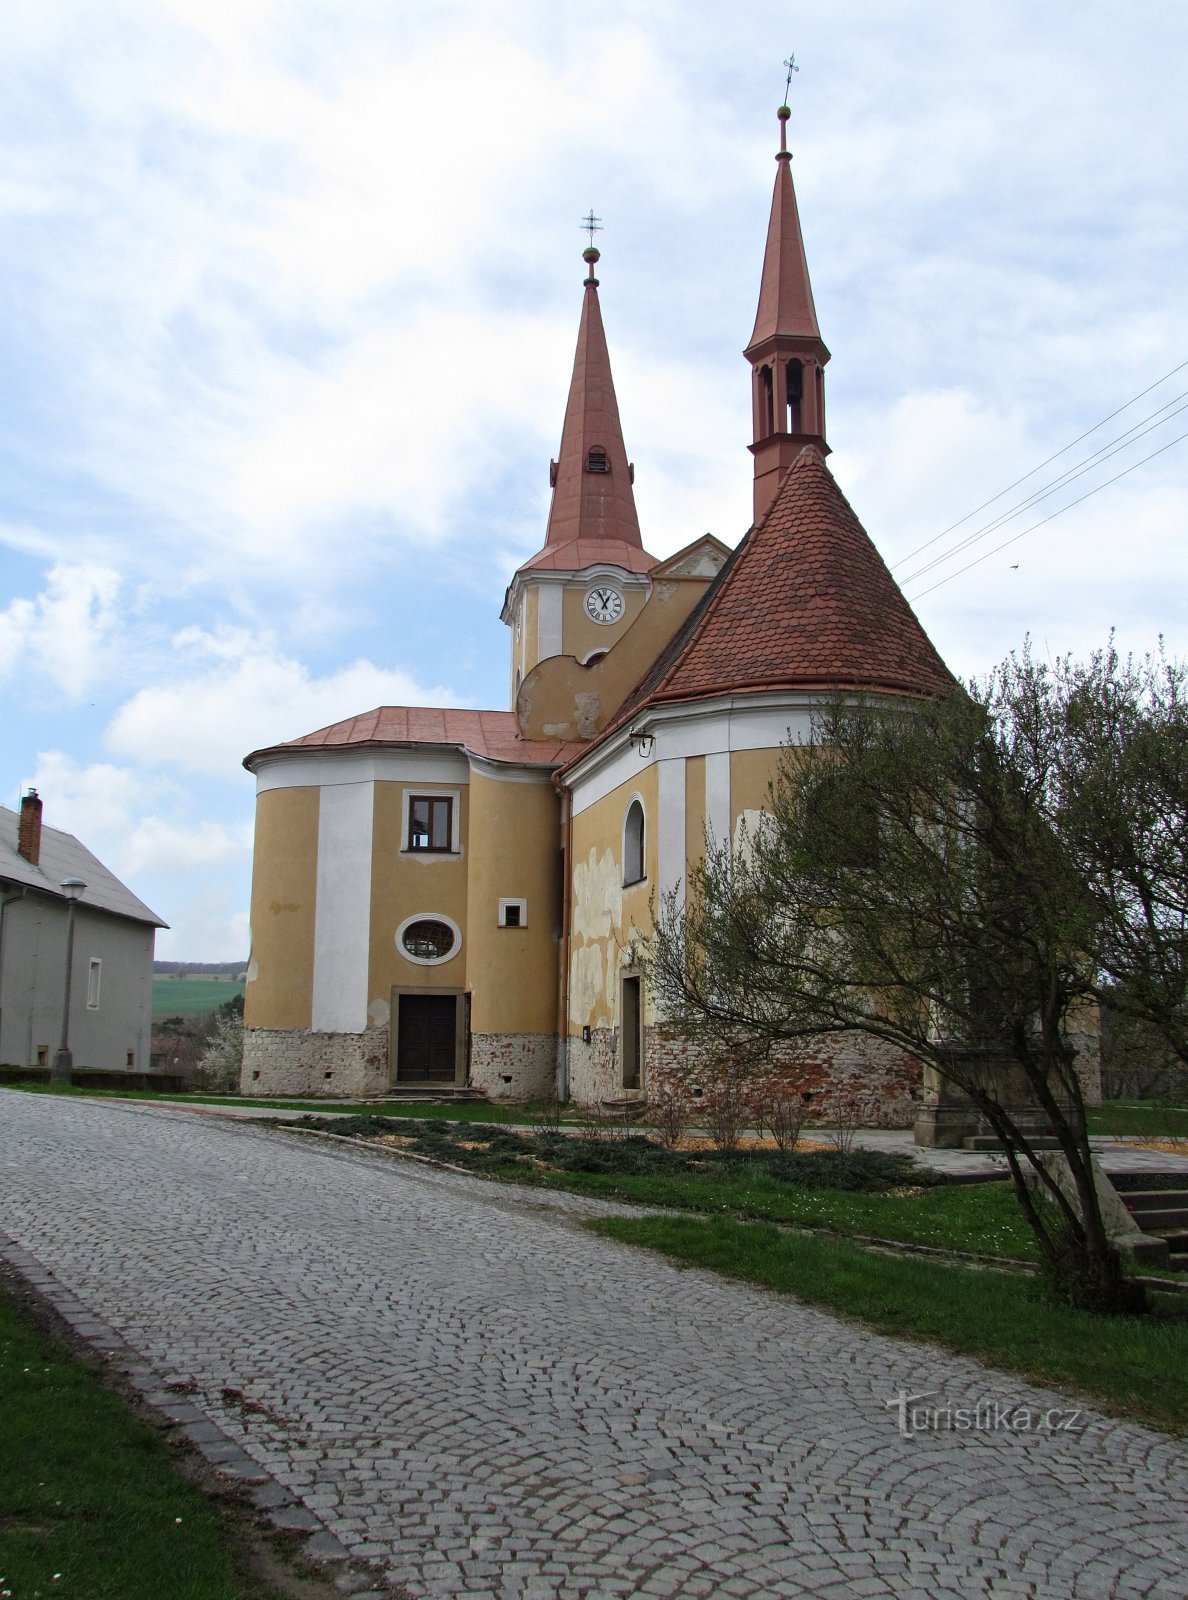 Pačlavice - St. Martin's Church